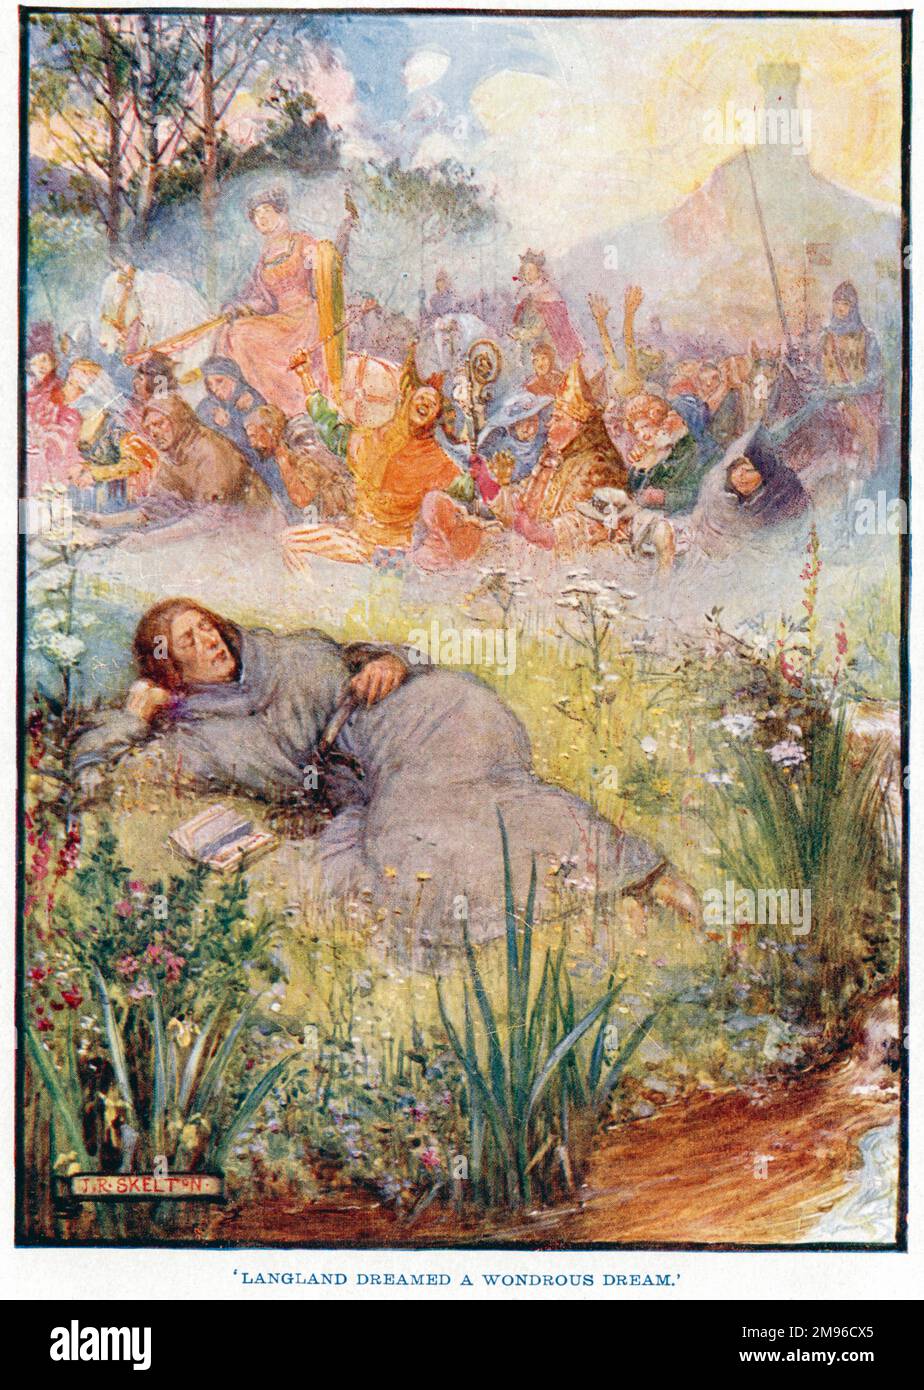 Langland träumte einen wunderbaren Traum. William Langland, in seinem Gedicht Piers Ploughman aus dem 14. Jahrhundert, schläft in den Malvern Hills ein und träumt von einem „fairen Feld voller Menschen“. Stockfoto